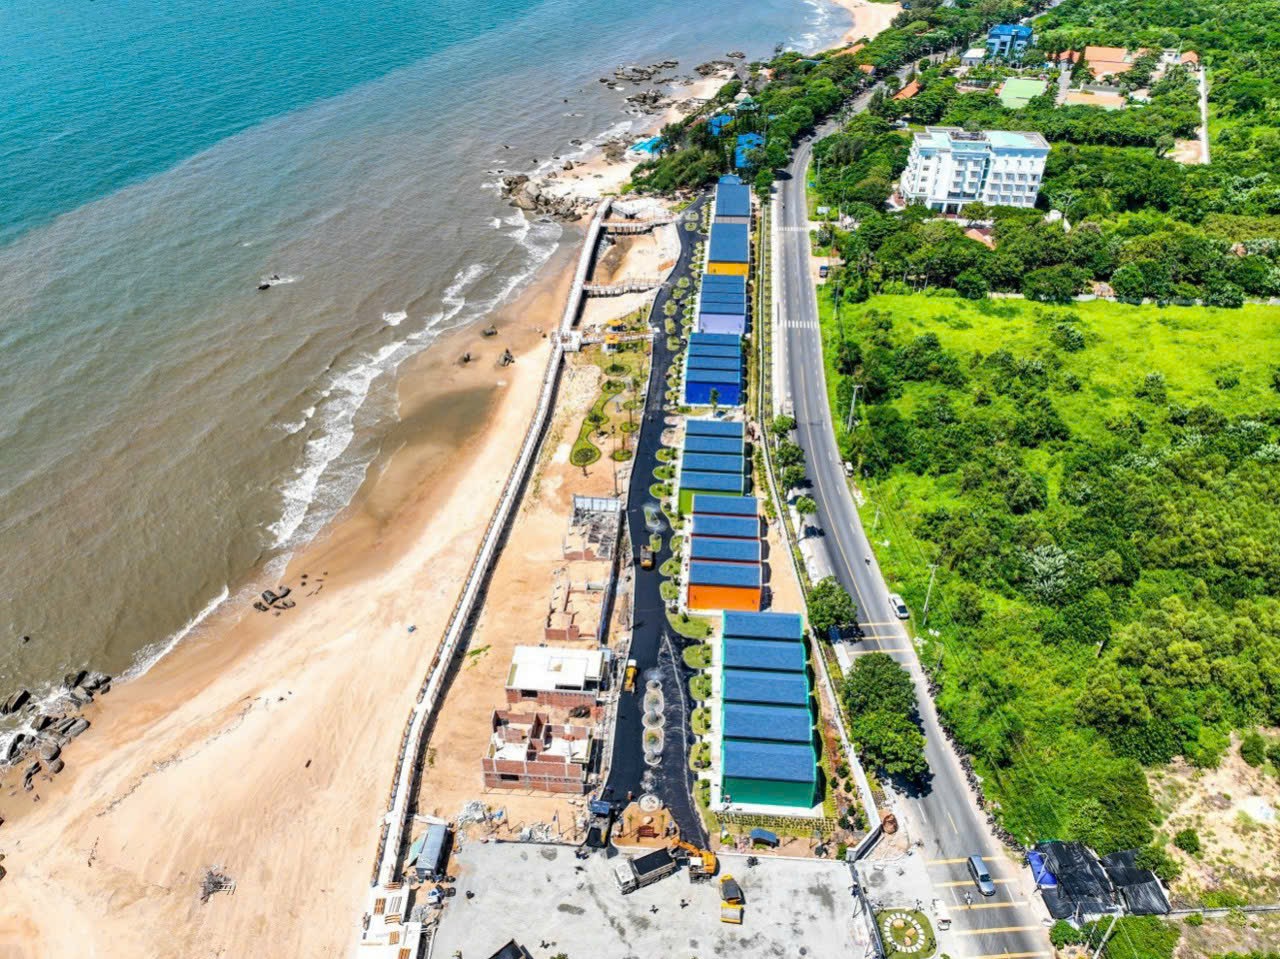 Quy hoạch chung của tỉnh đã tính toán đến các phương án quy hoạch đô thị, bảo vệ môi trường, phát triển kinh tế. Trong ảnh: Các dự án du lịch dọc biển Long Hải- Phước Hải.